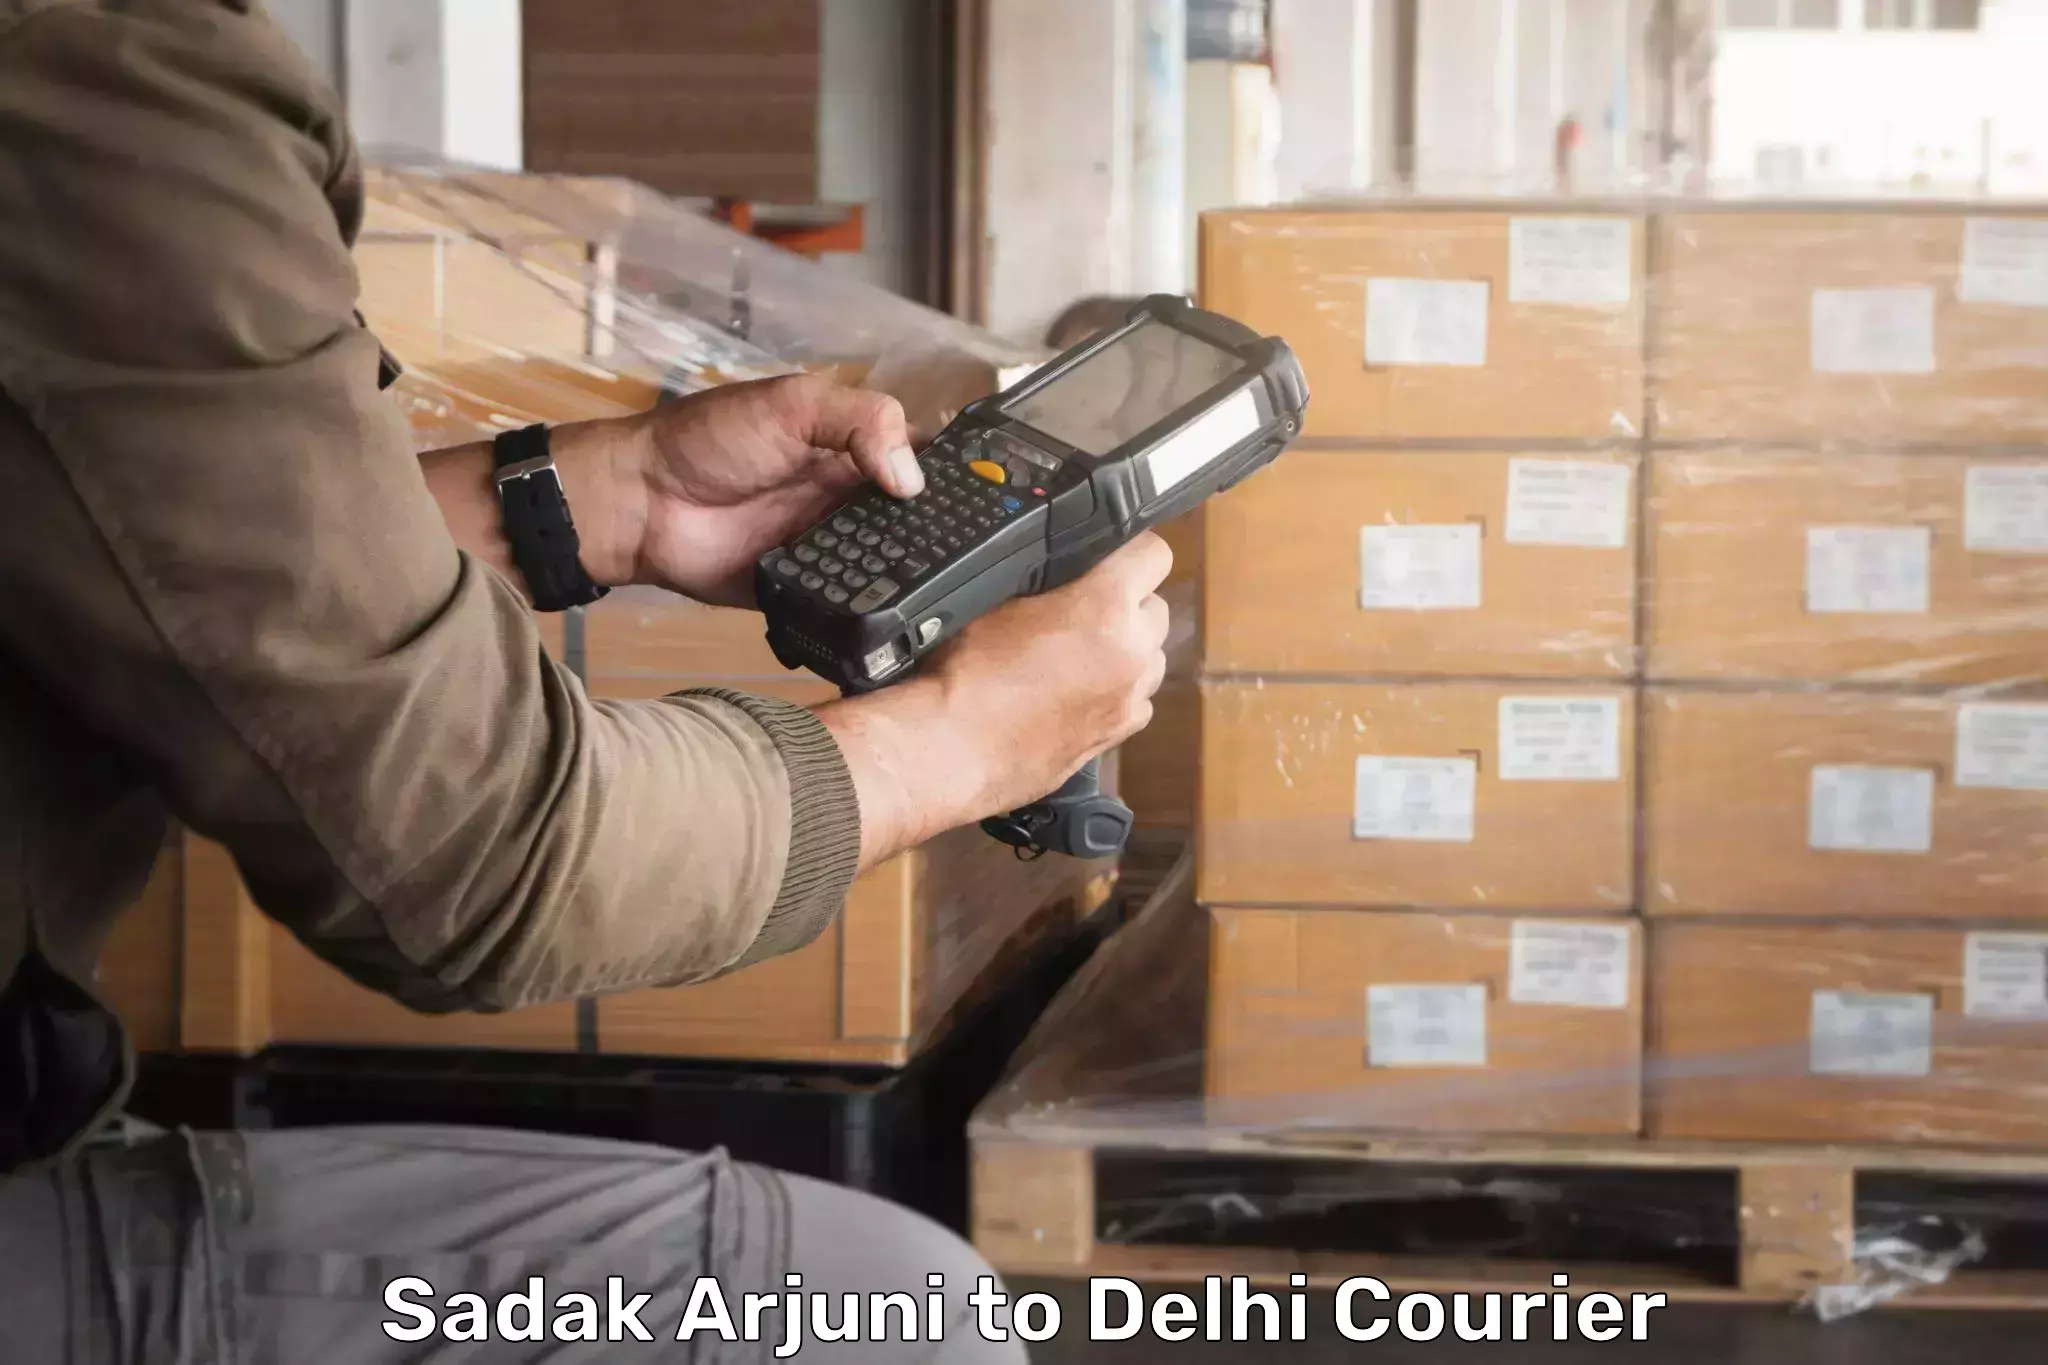 Customizable shipping options Sadak Arjuni to IIT Delhi